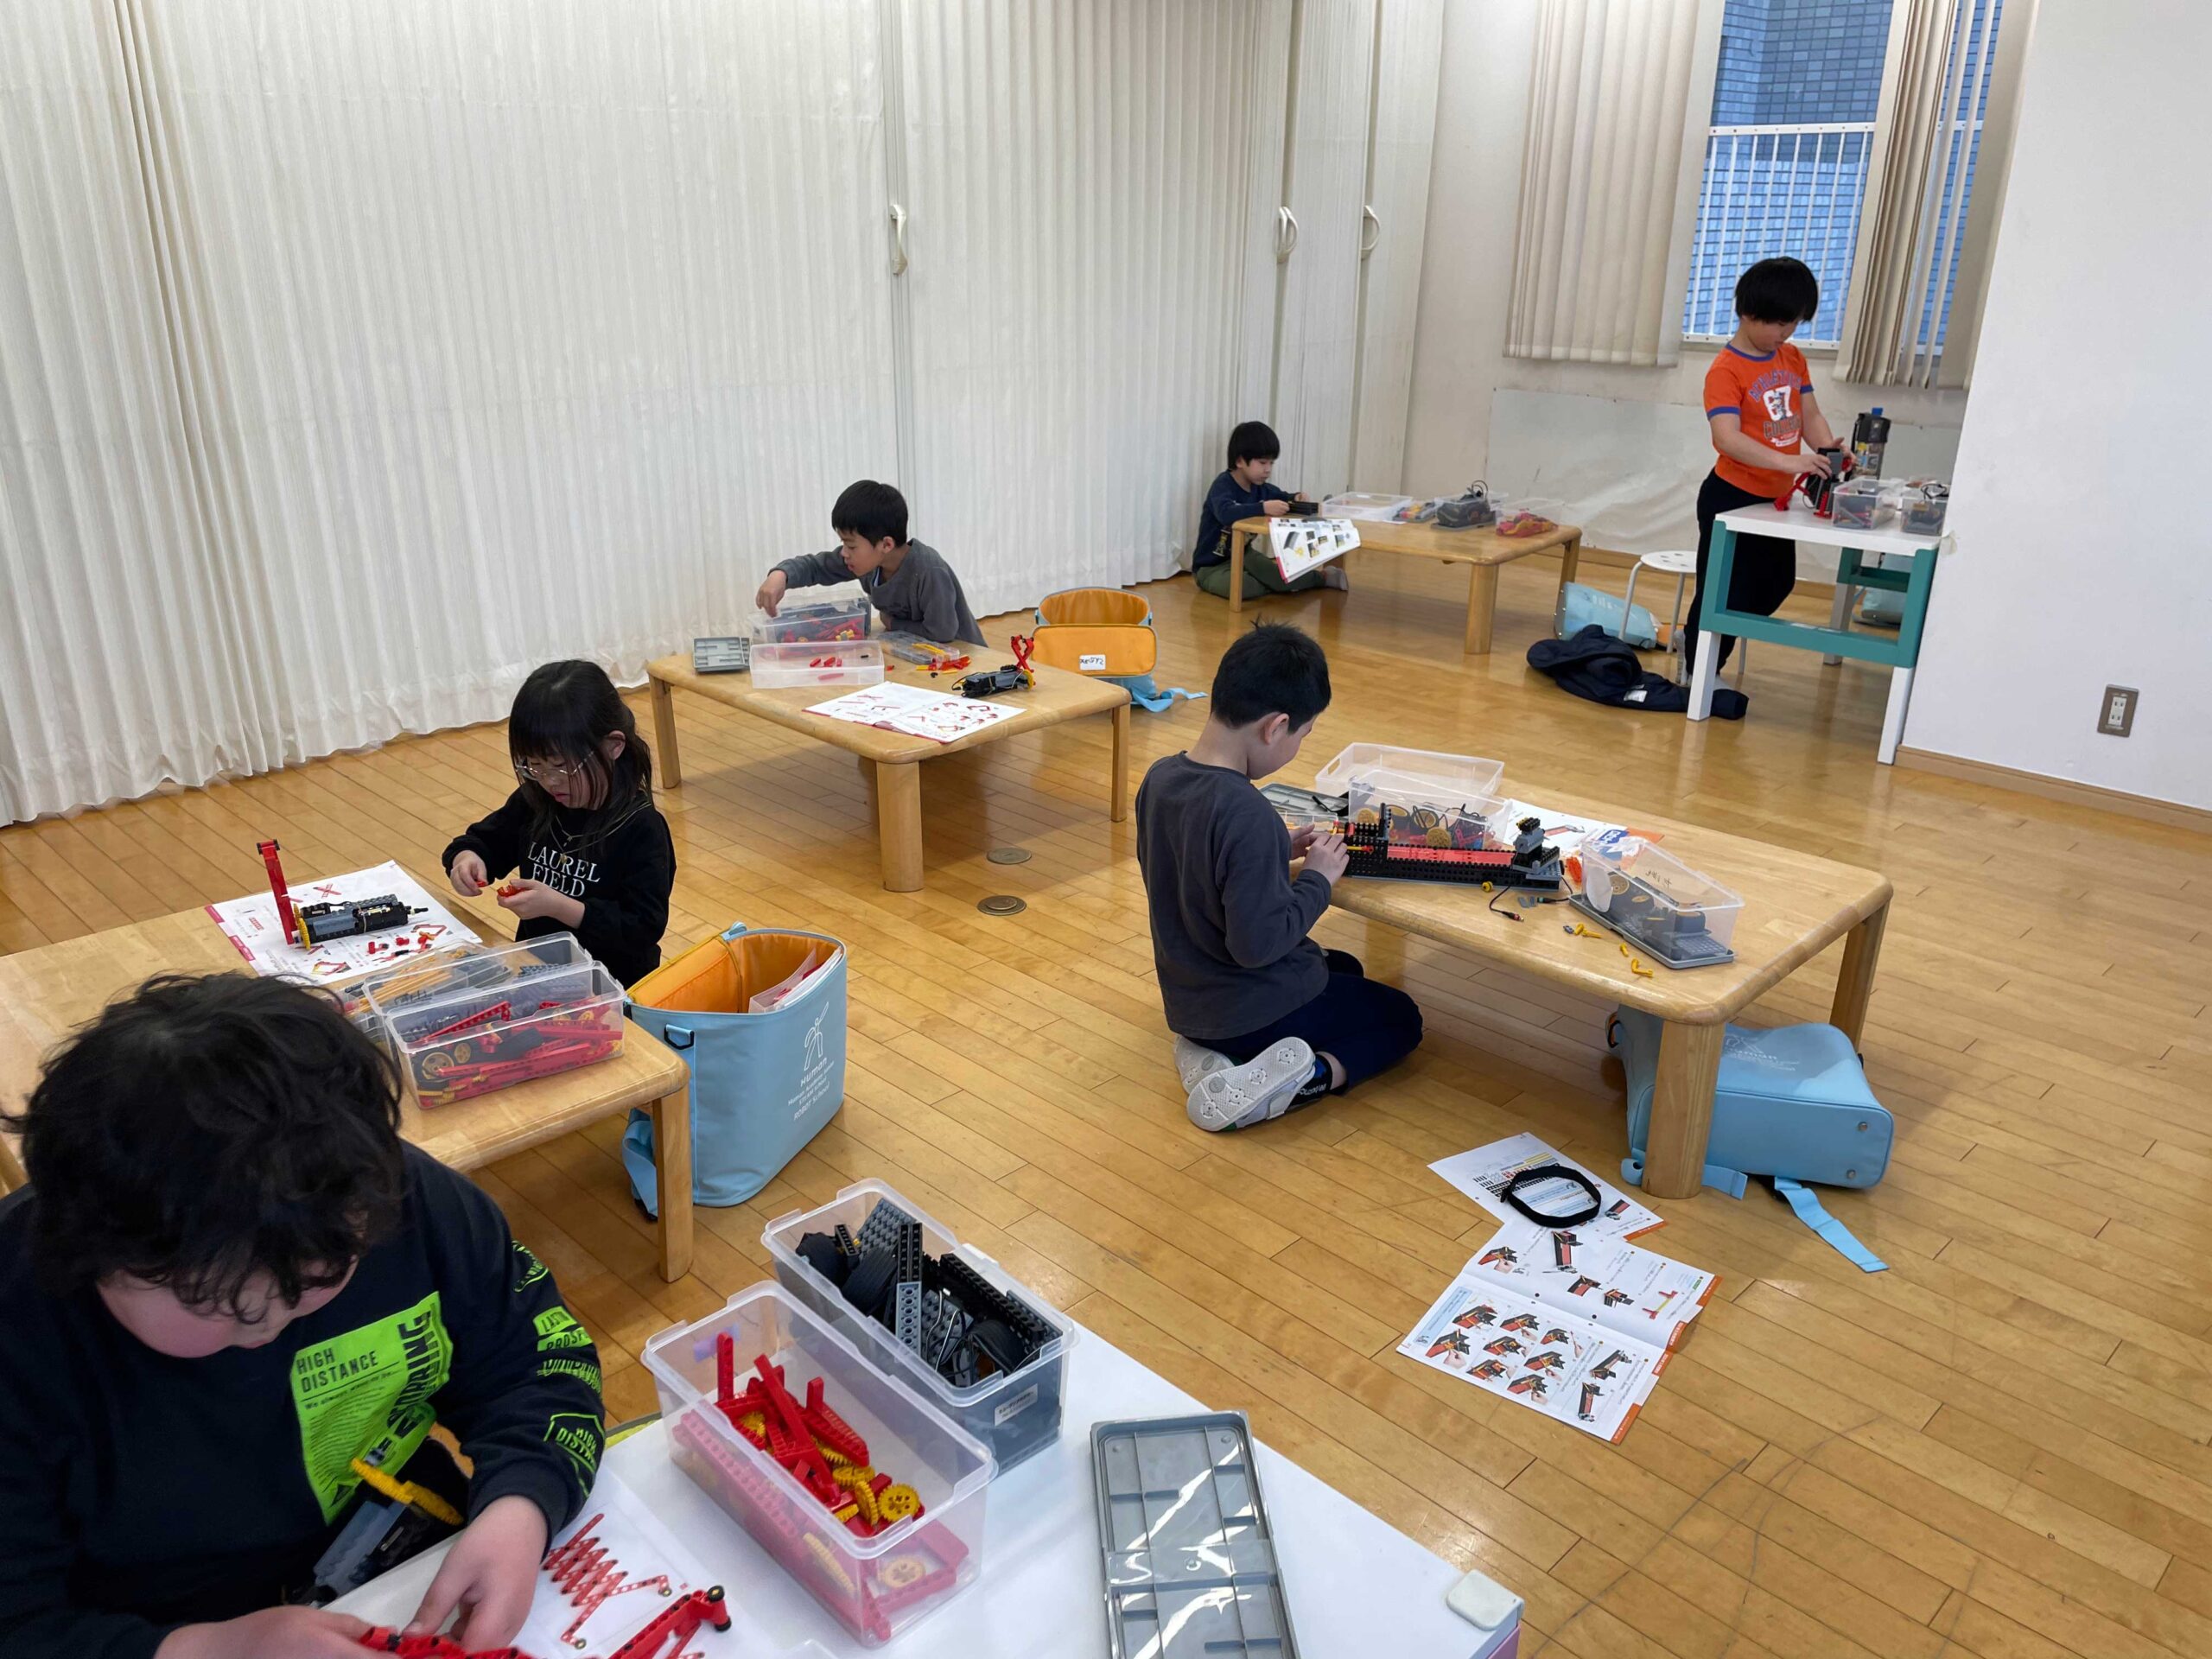 フロンティアキッズ ブログ記事 【ロボット教室】早稲田教室、市ヶ谷教室のようすのイメージサムネイル画像